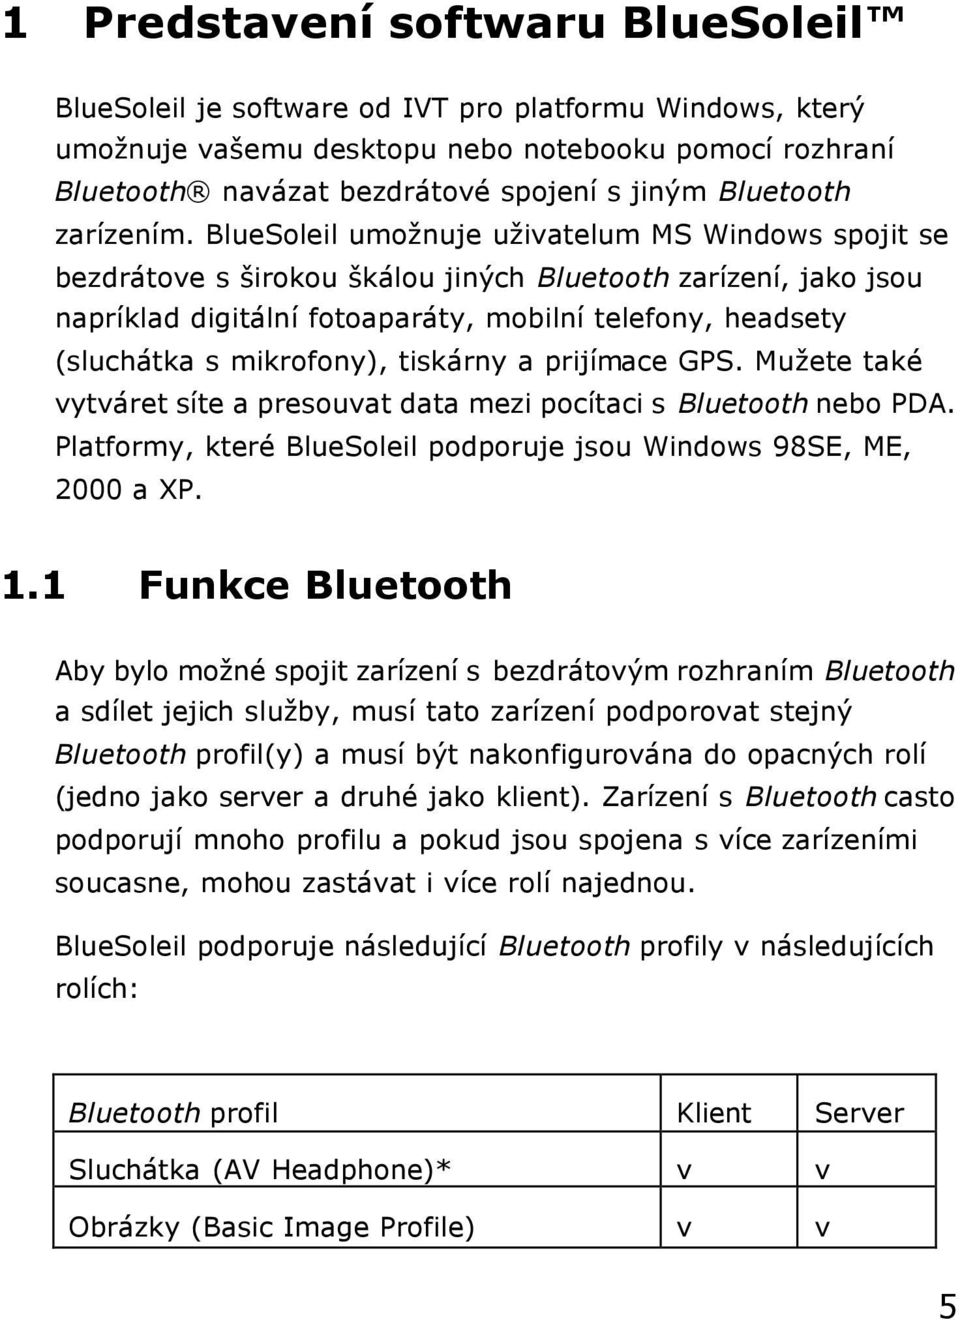 BlueSoleil umožnuje uživatelum MS Windows spojit se bezdrátove s širokou škálou jiných Bluetooth zarízení, jako jsou napríklad digitální fotoaparáty, mobilní telefony, headsety (sluchátka s